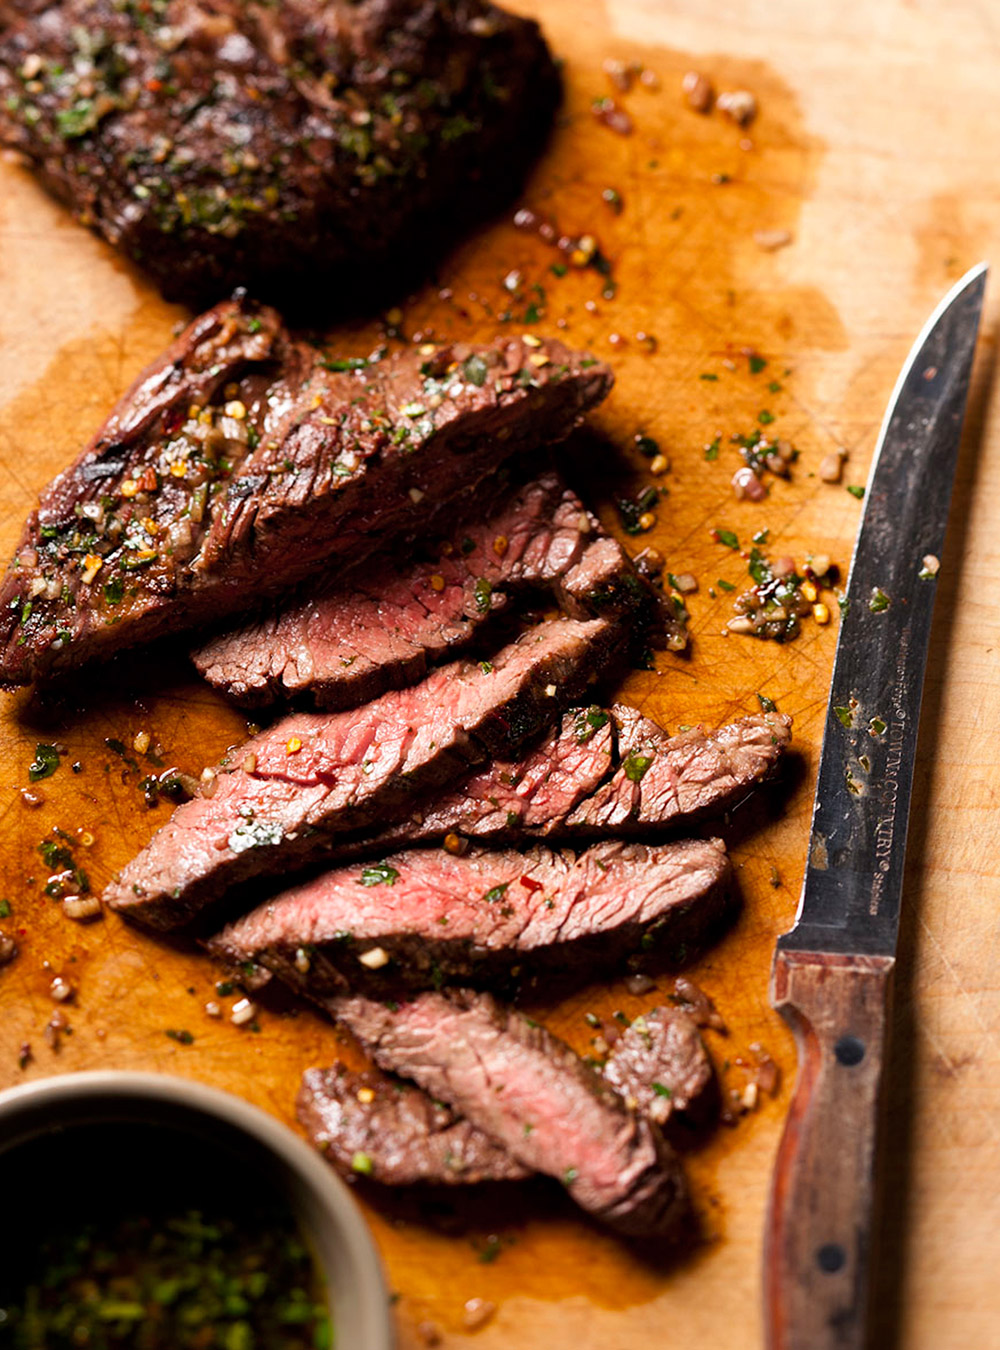 Recette de boeuf: tout sur les rôtis ou les steaks de boeuf  page 8 ...